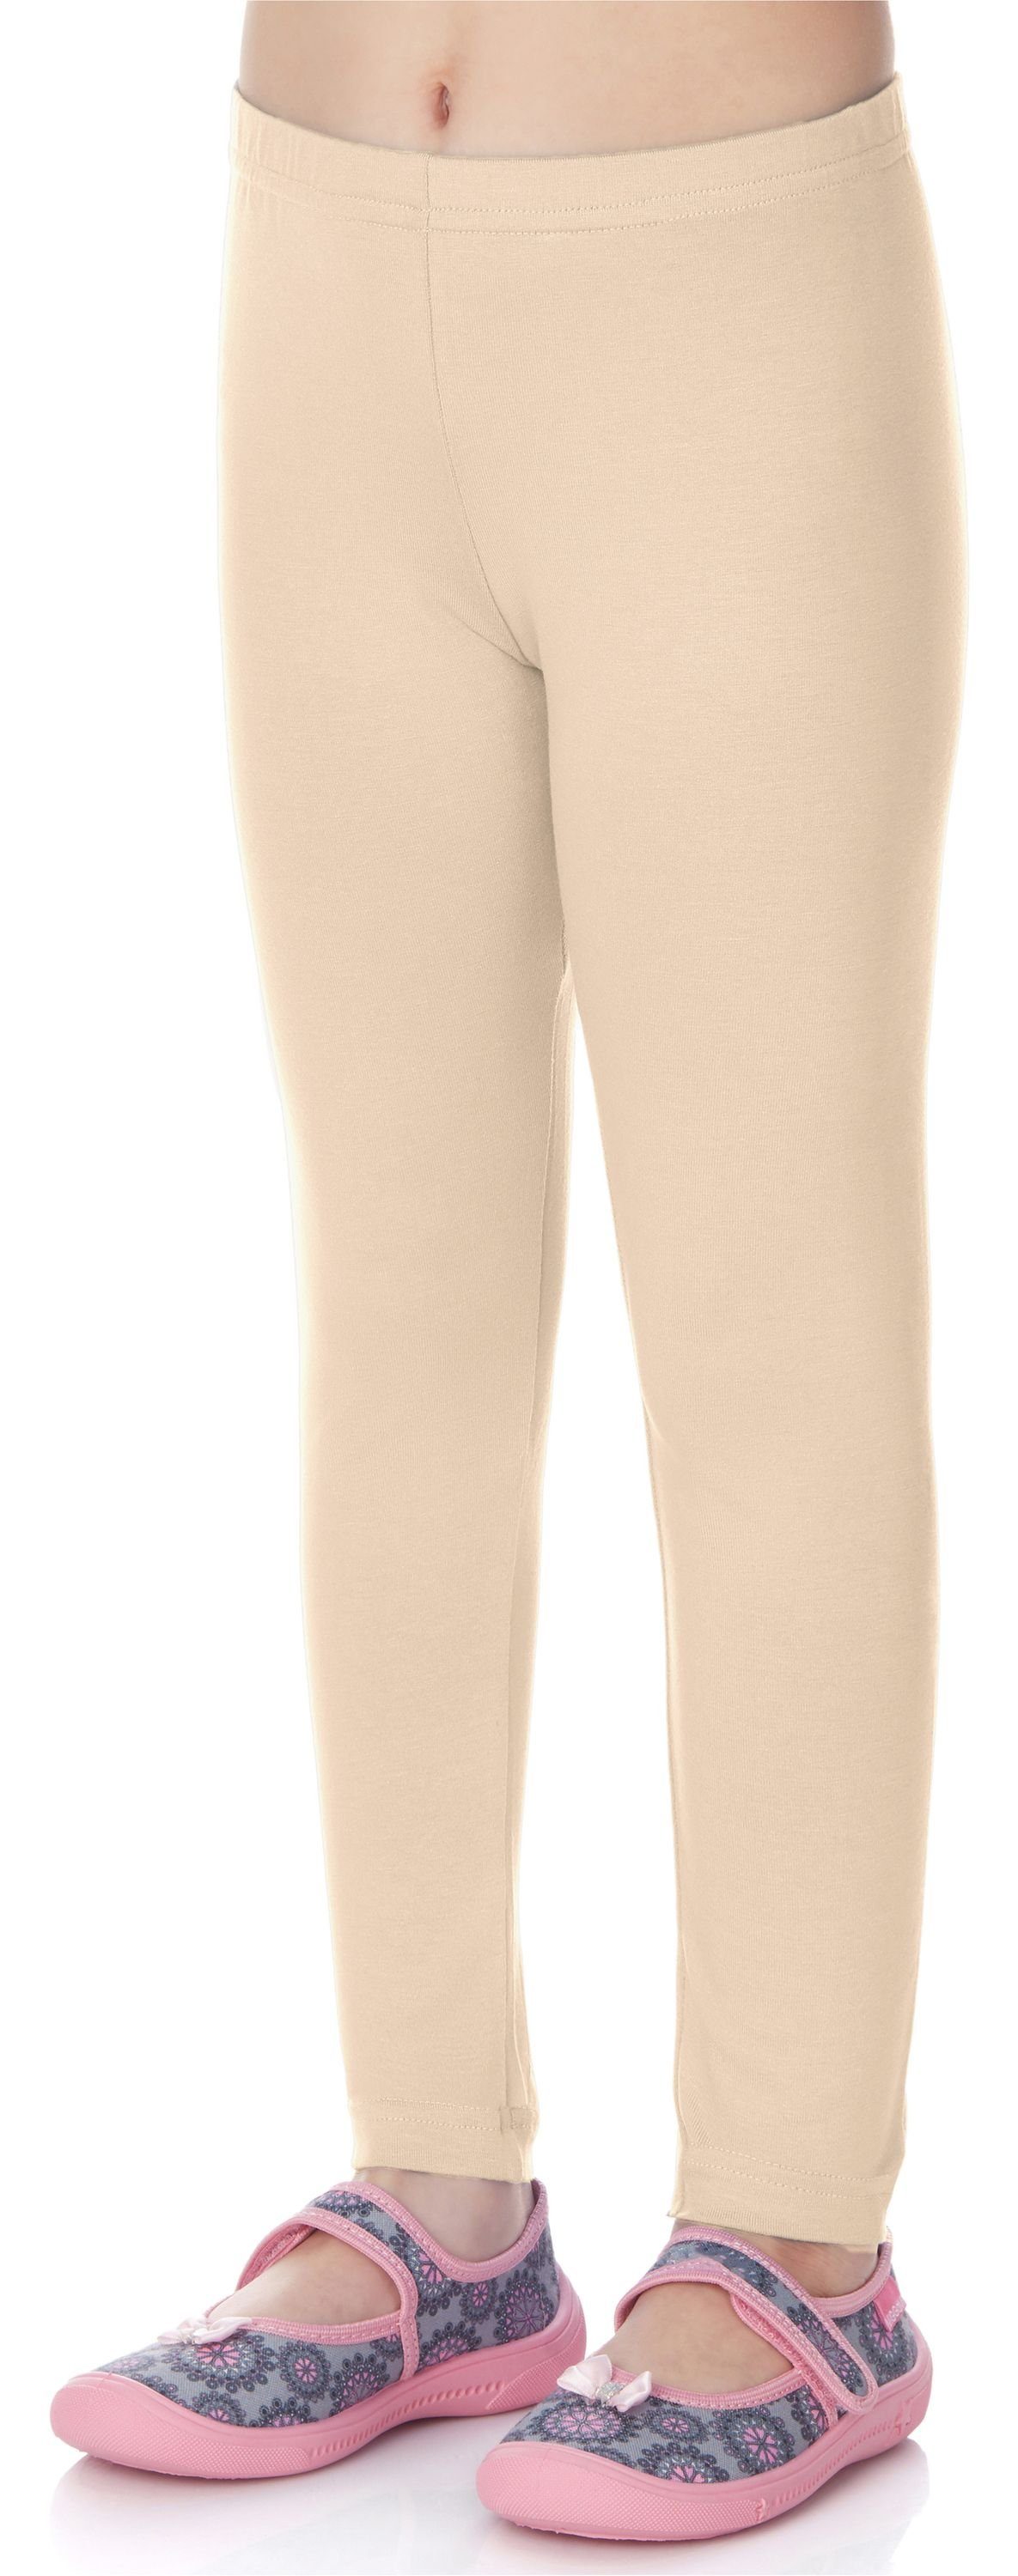 (1-tlg) Bund Merry elastischer Viskose MS10-130 Leggings Style Mädchen Lange Beige-1 Leggings aus